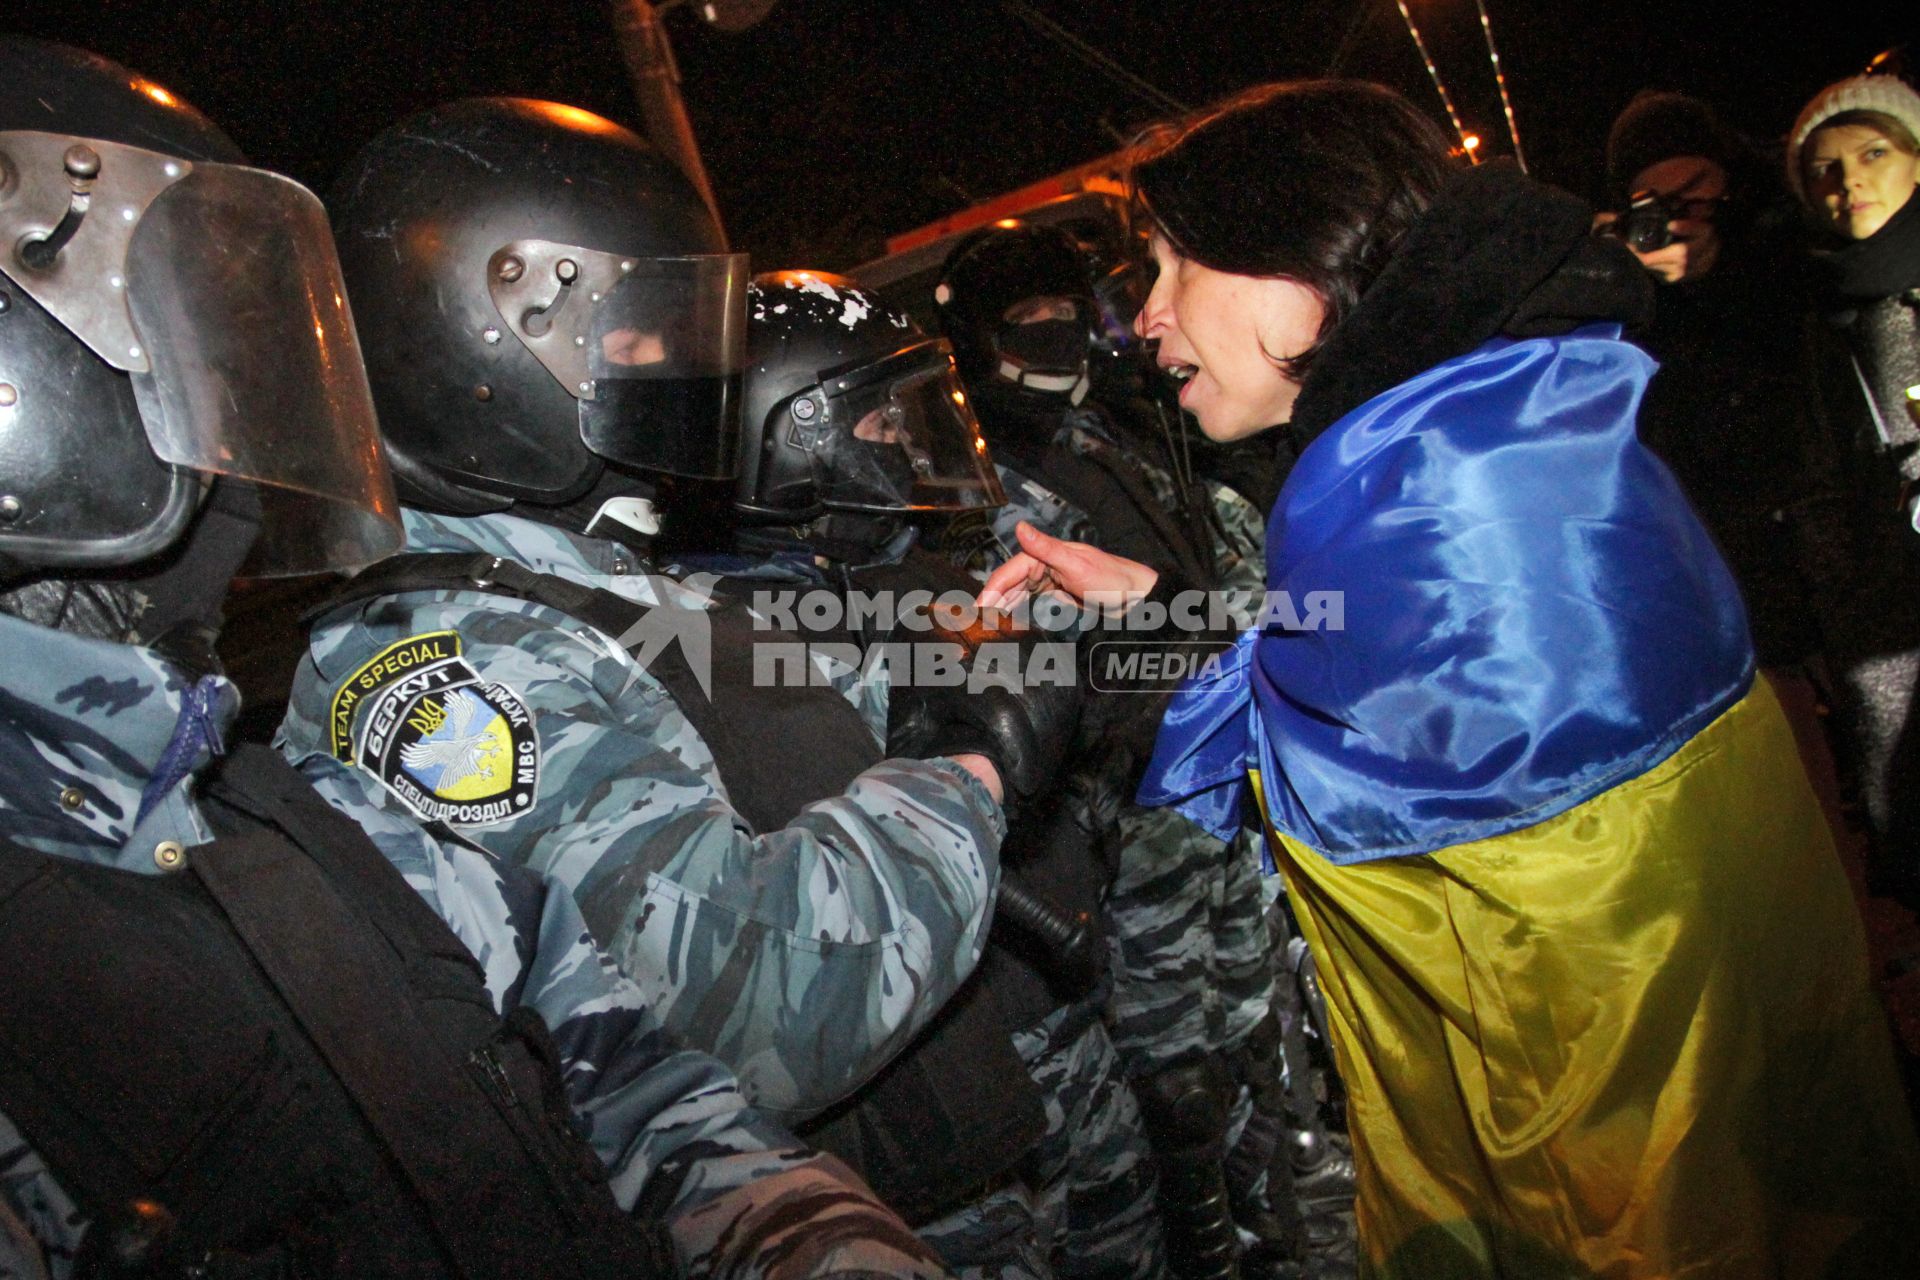 Конфликт между протестующими и бойцами спецподразделения `Беркут`возле Святошинского РОВД. На снимке: протестующая с украинским флагом разговаривает с бойцом `Беркута`.